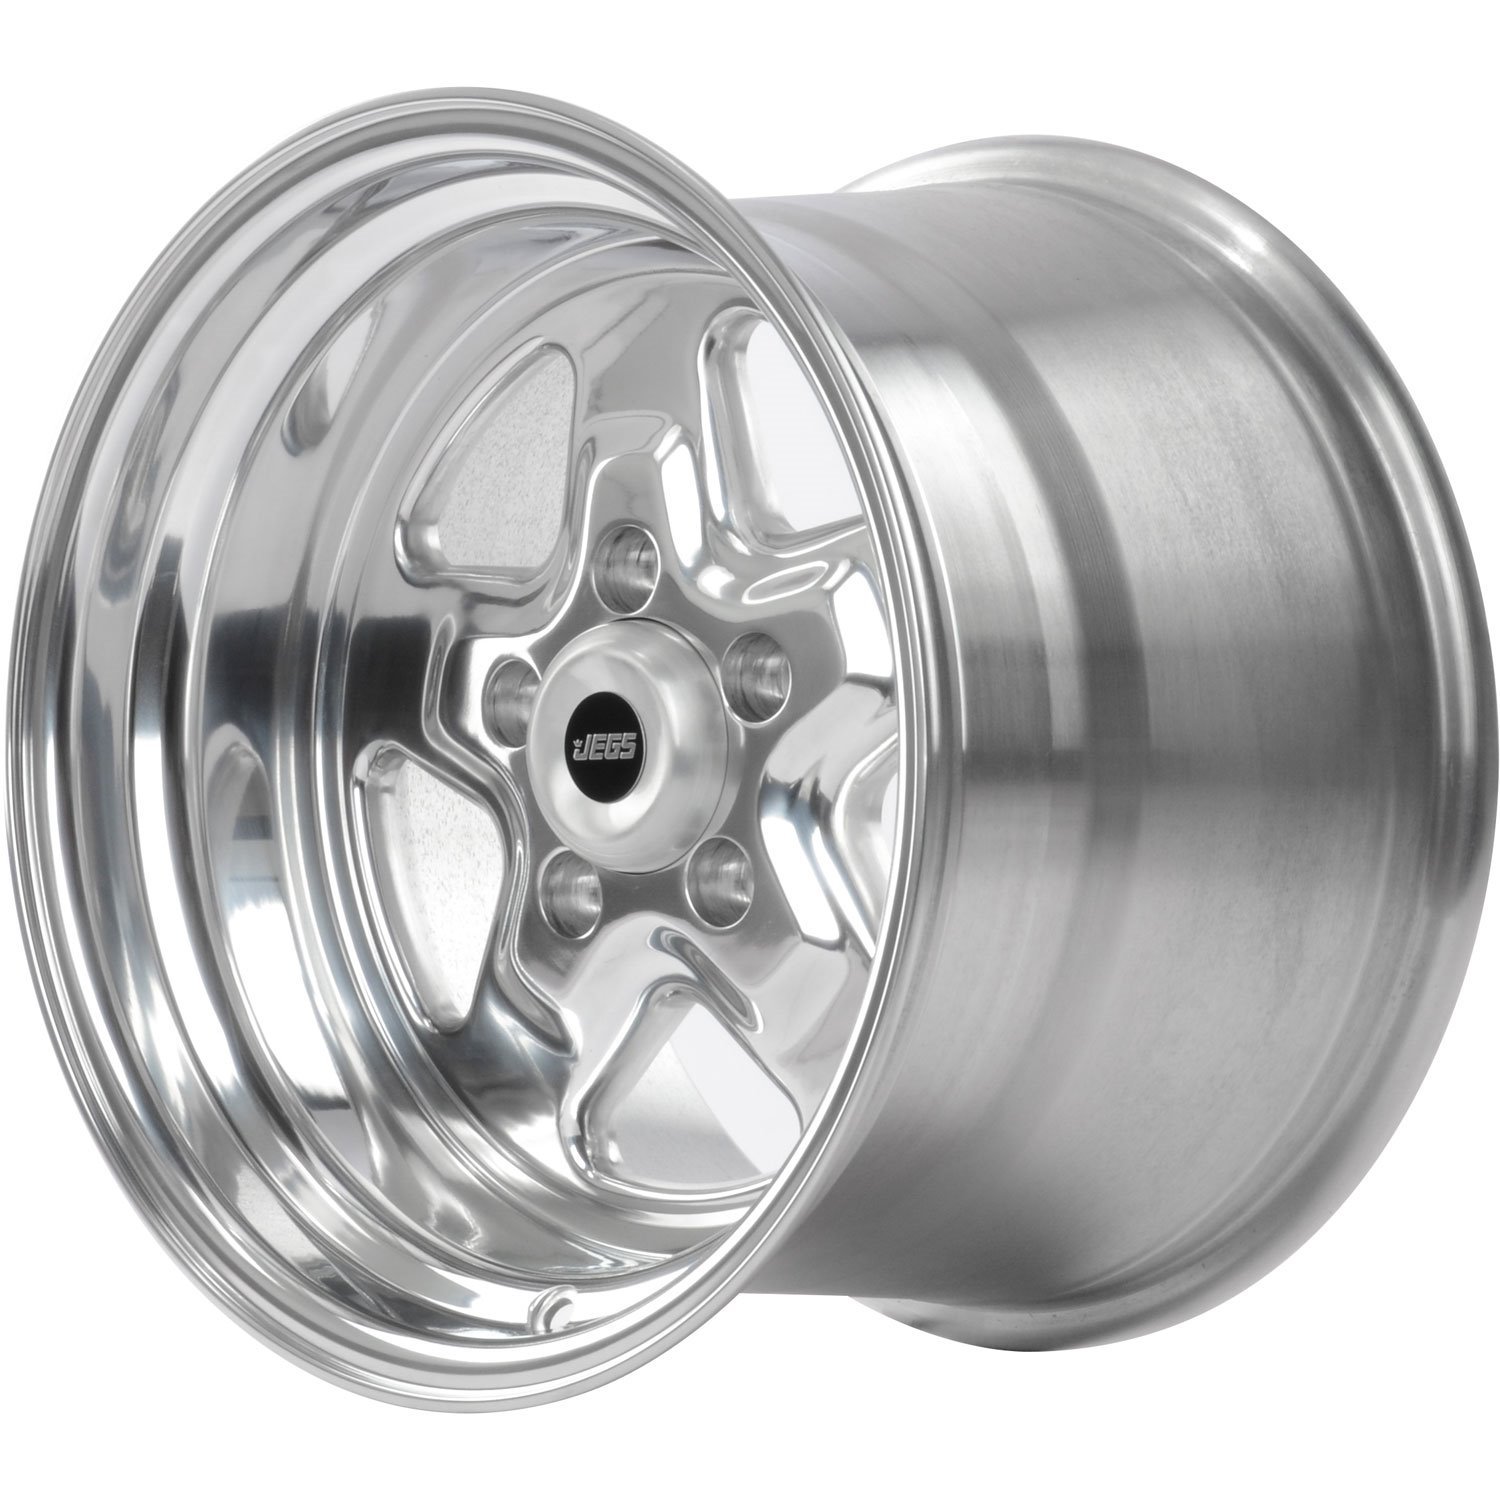 Sport Star 5-Spoke Wheel [Size: 15" x 10"] Polished